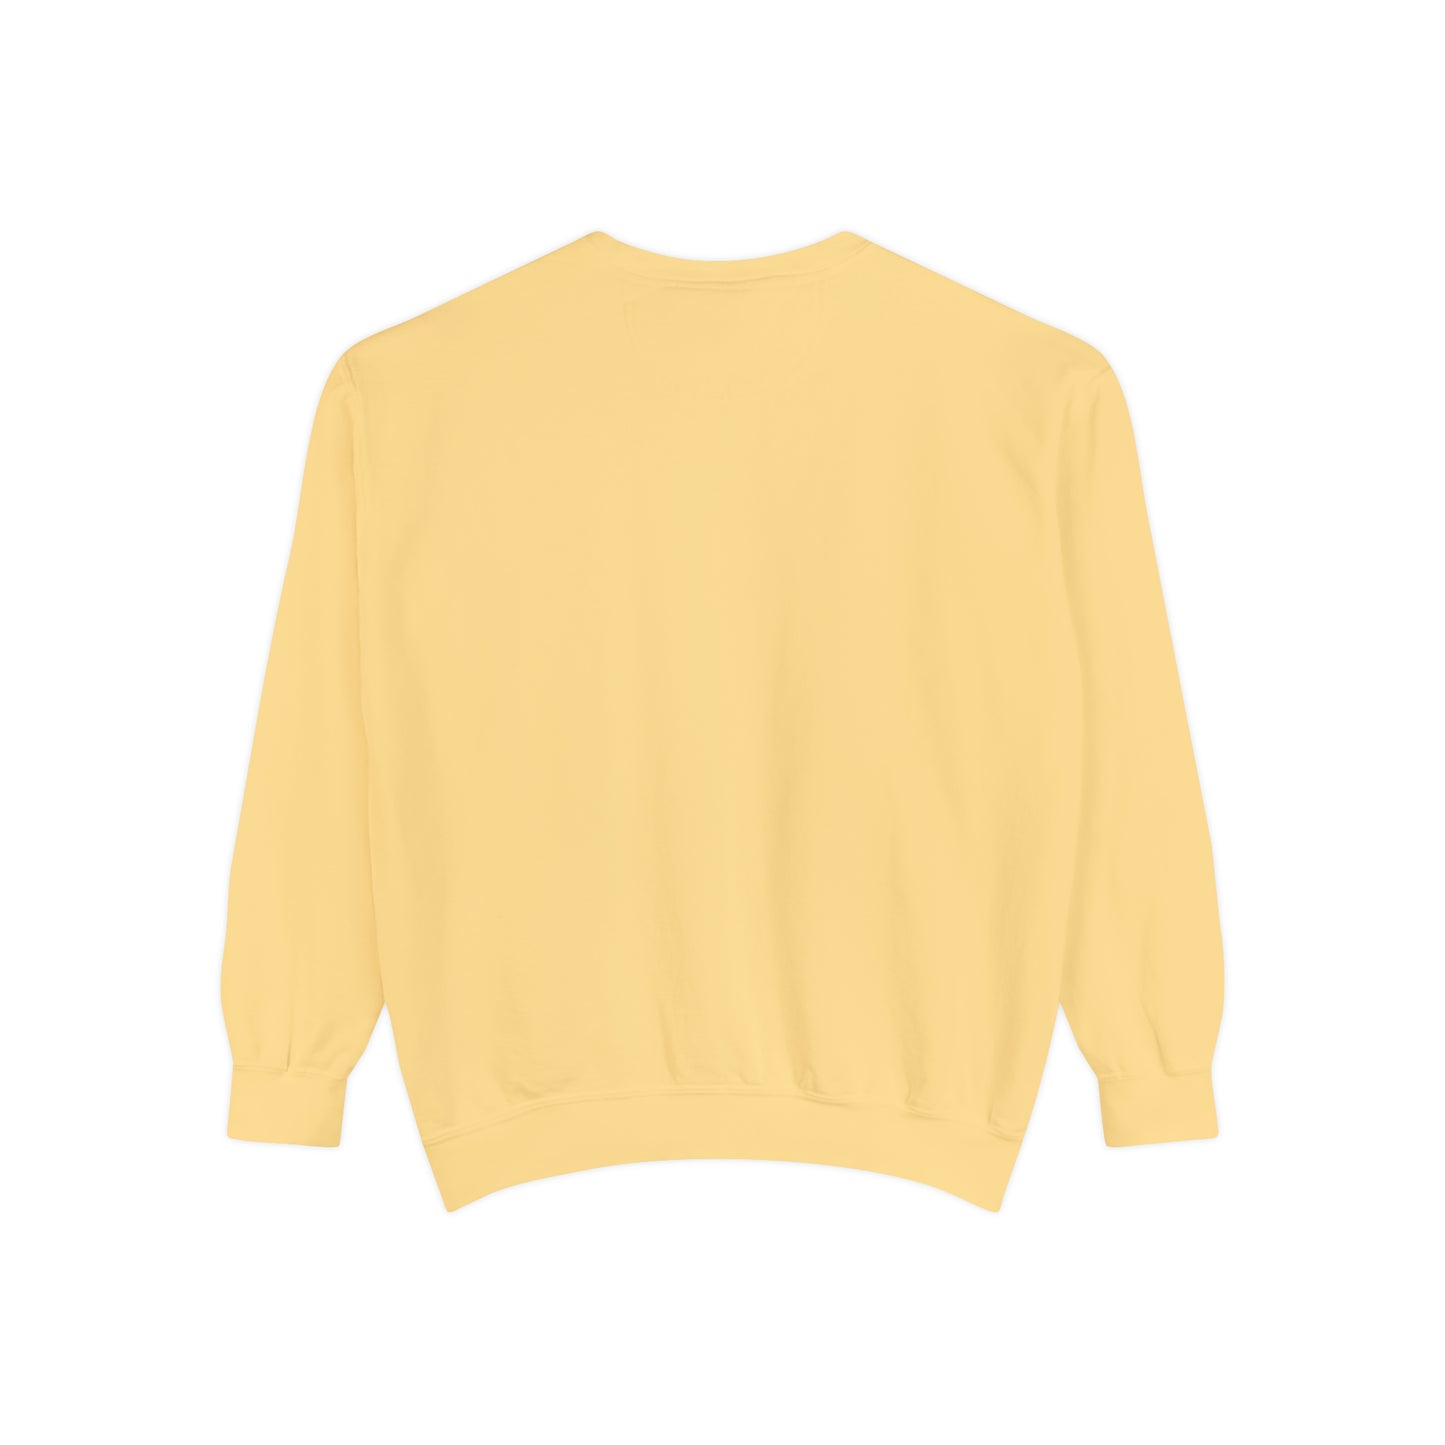 Bunny Pastel Comfort Colors Unisex Sweatshirt